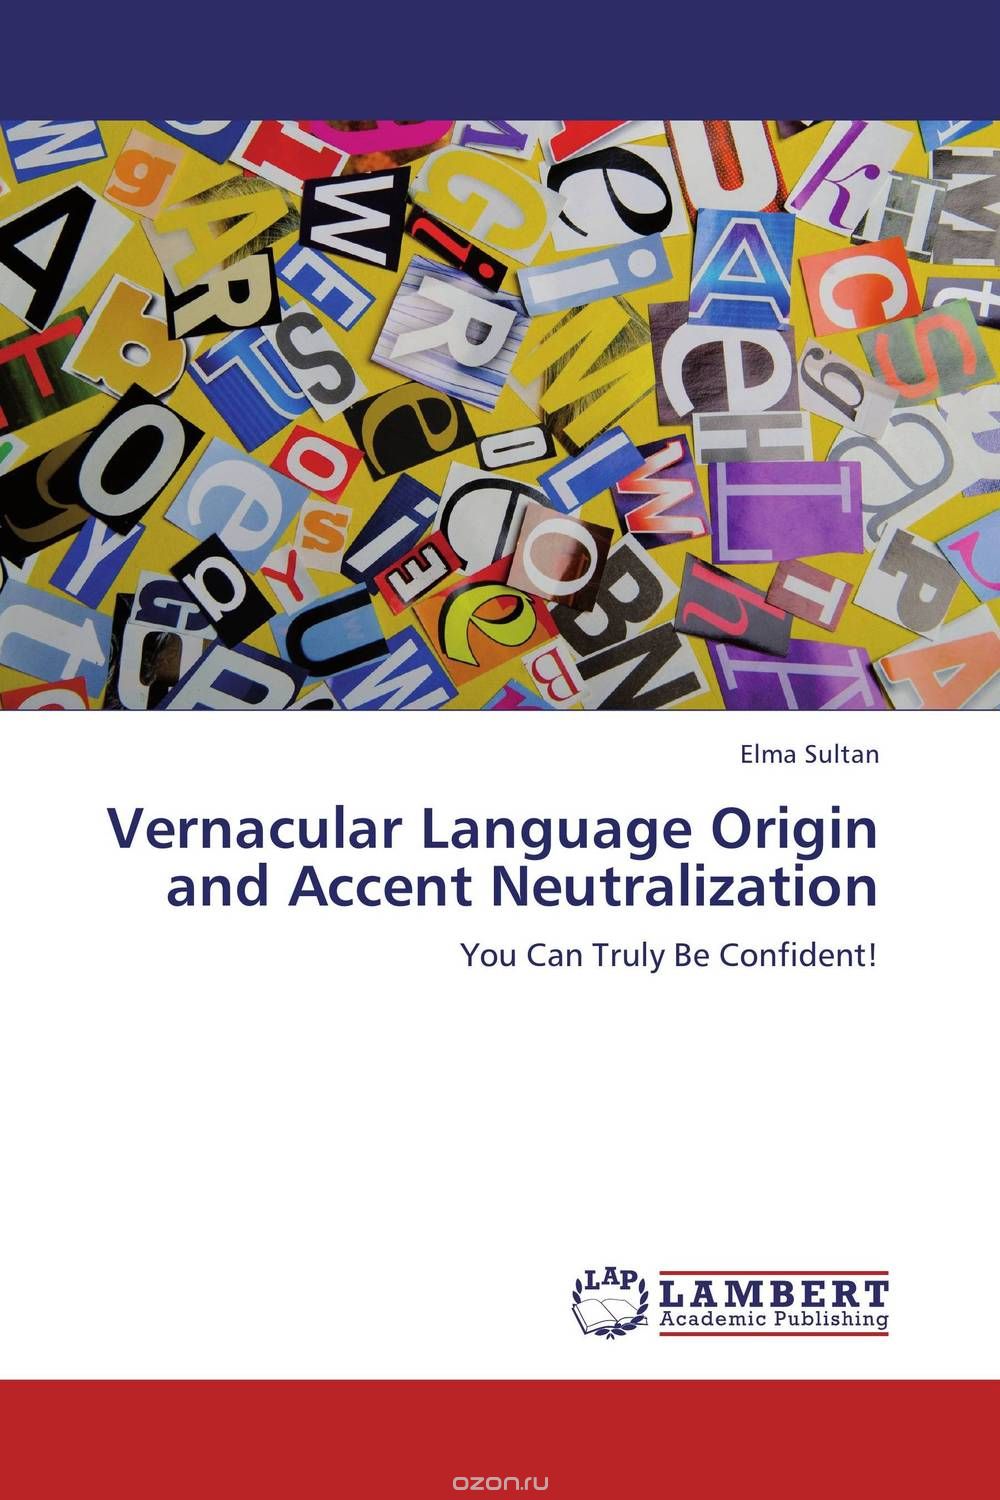 Скачать книгу "Vernacular Language Origin and Accent Neutralization"